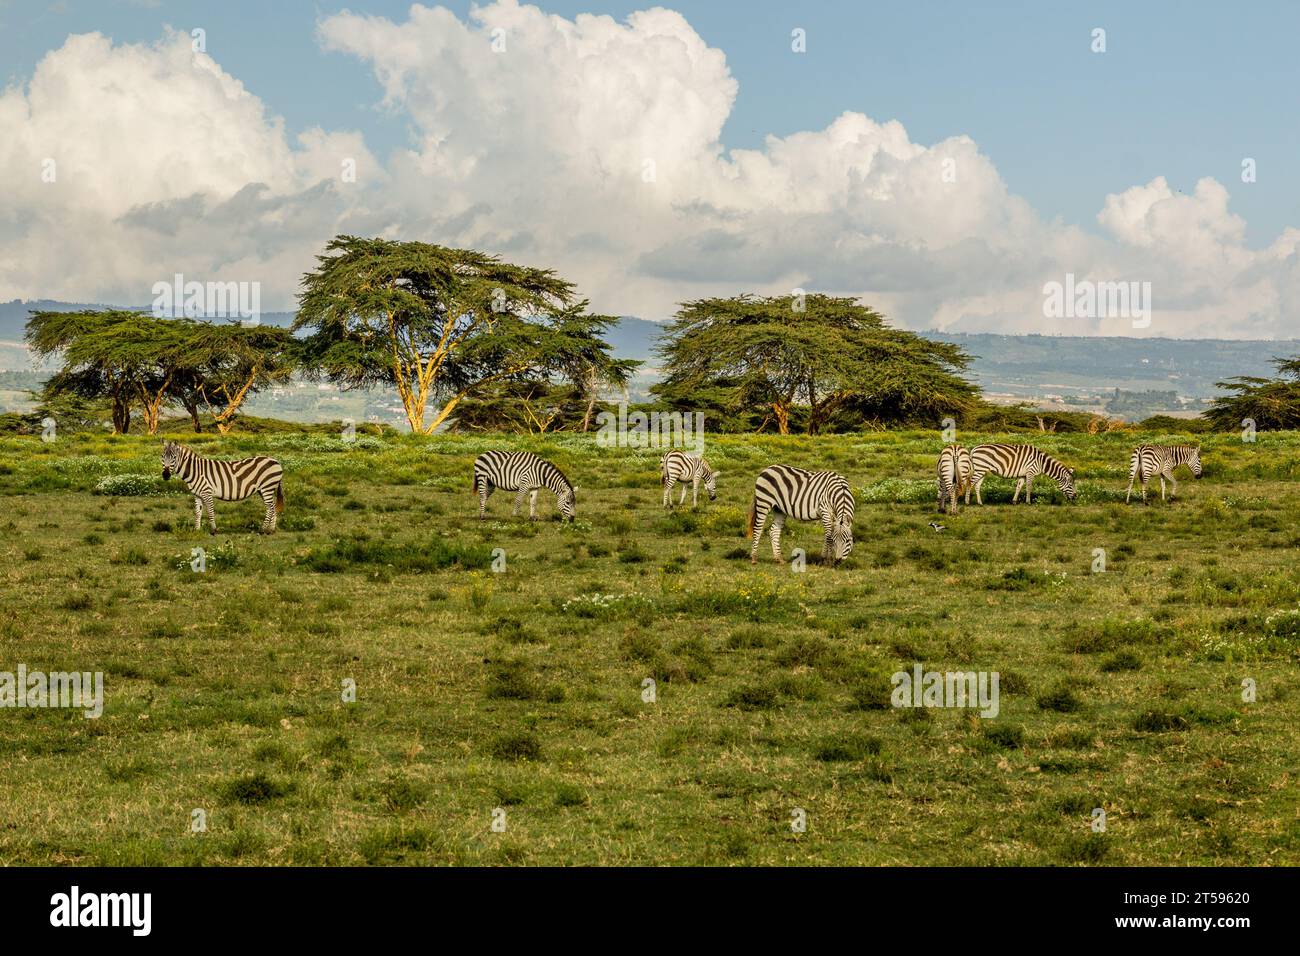 Burchell's zebras (Equus quagga burchellii) at Crescent Island Game Sanctuary on Naivasha lake, Kenya Stock Photo